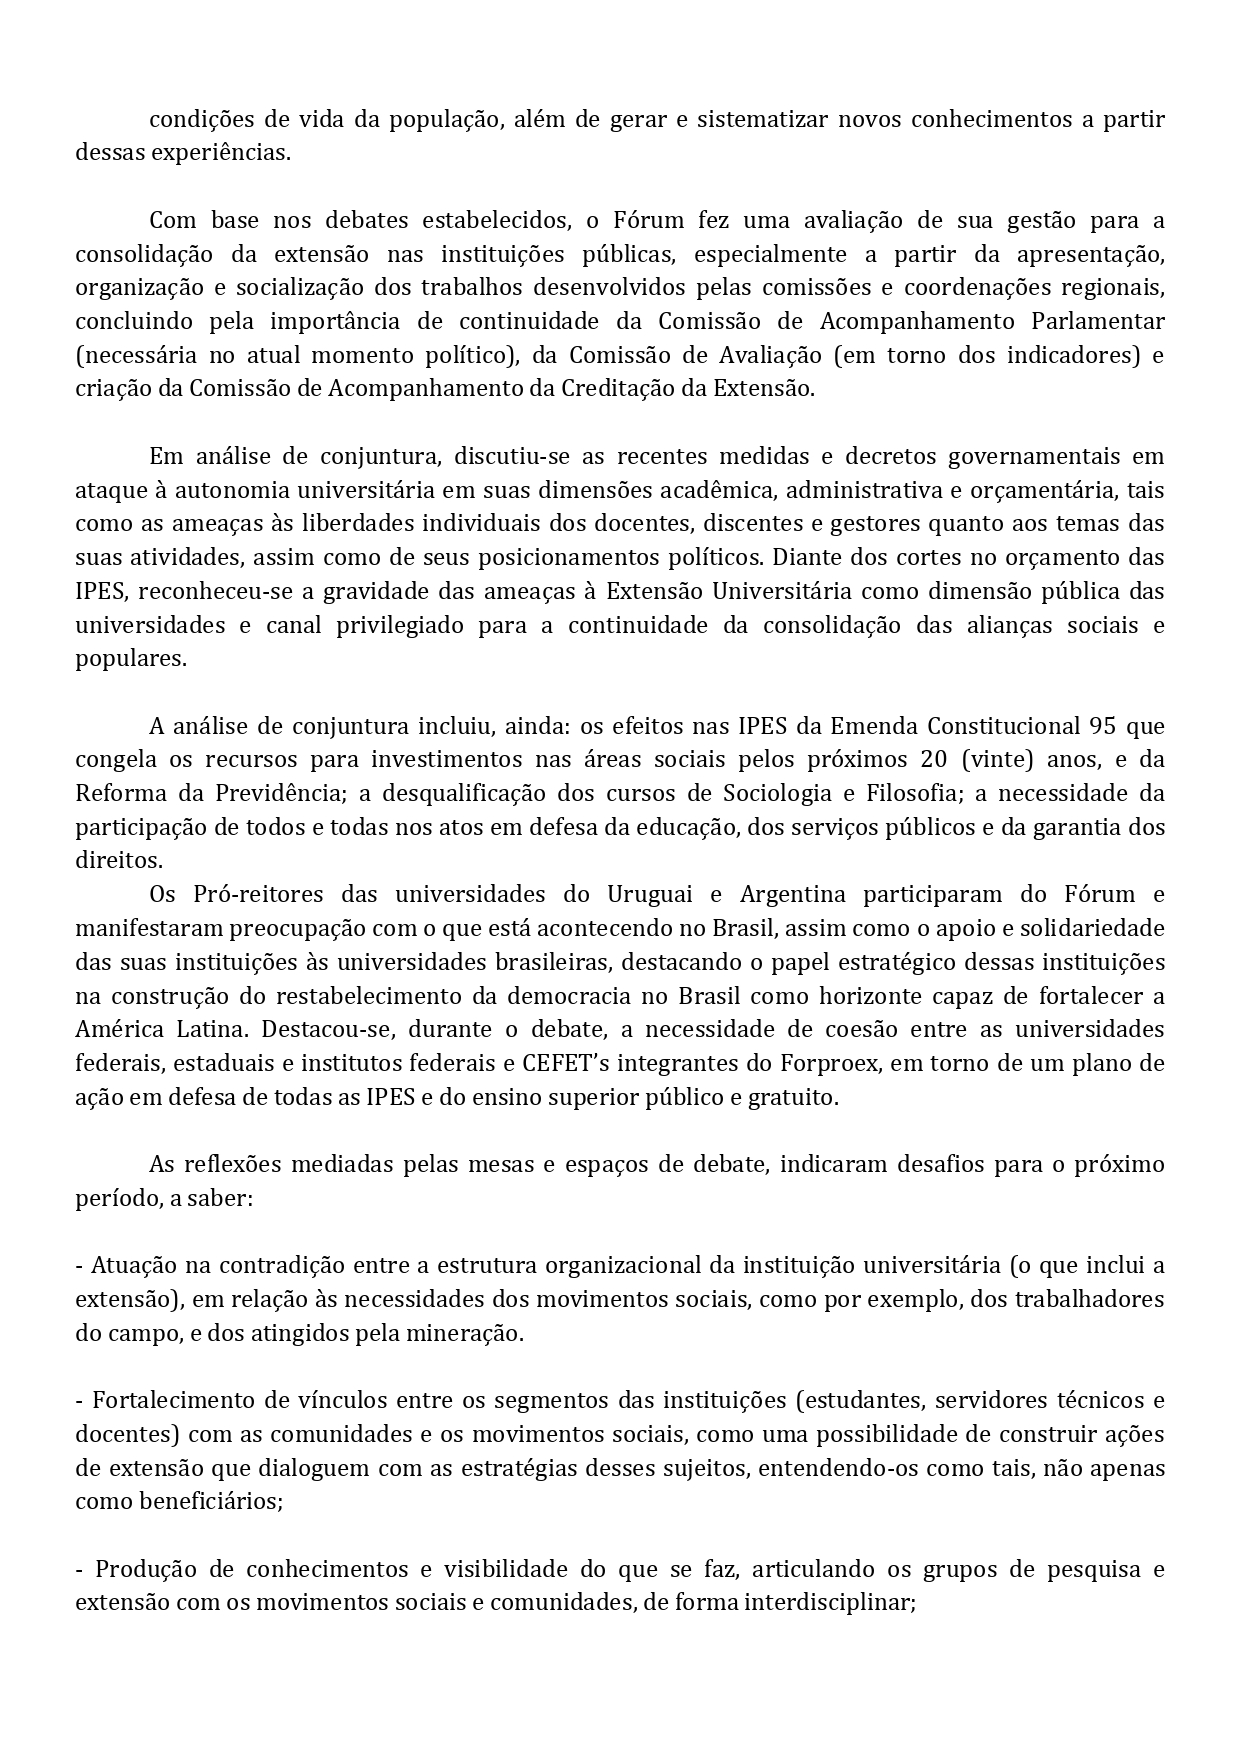 Carta brasilia page 0002 2